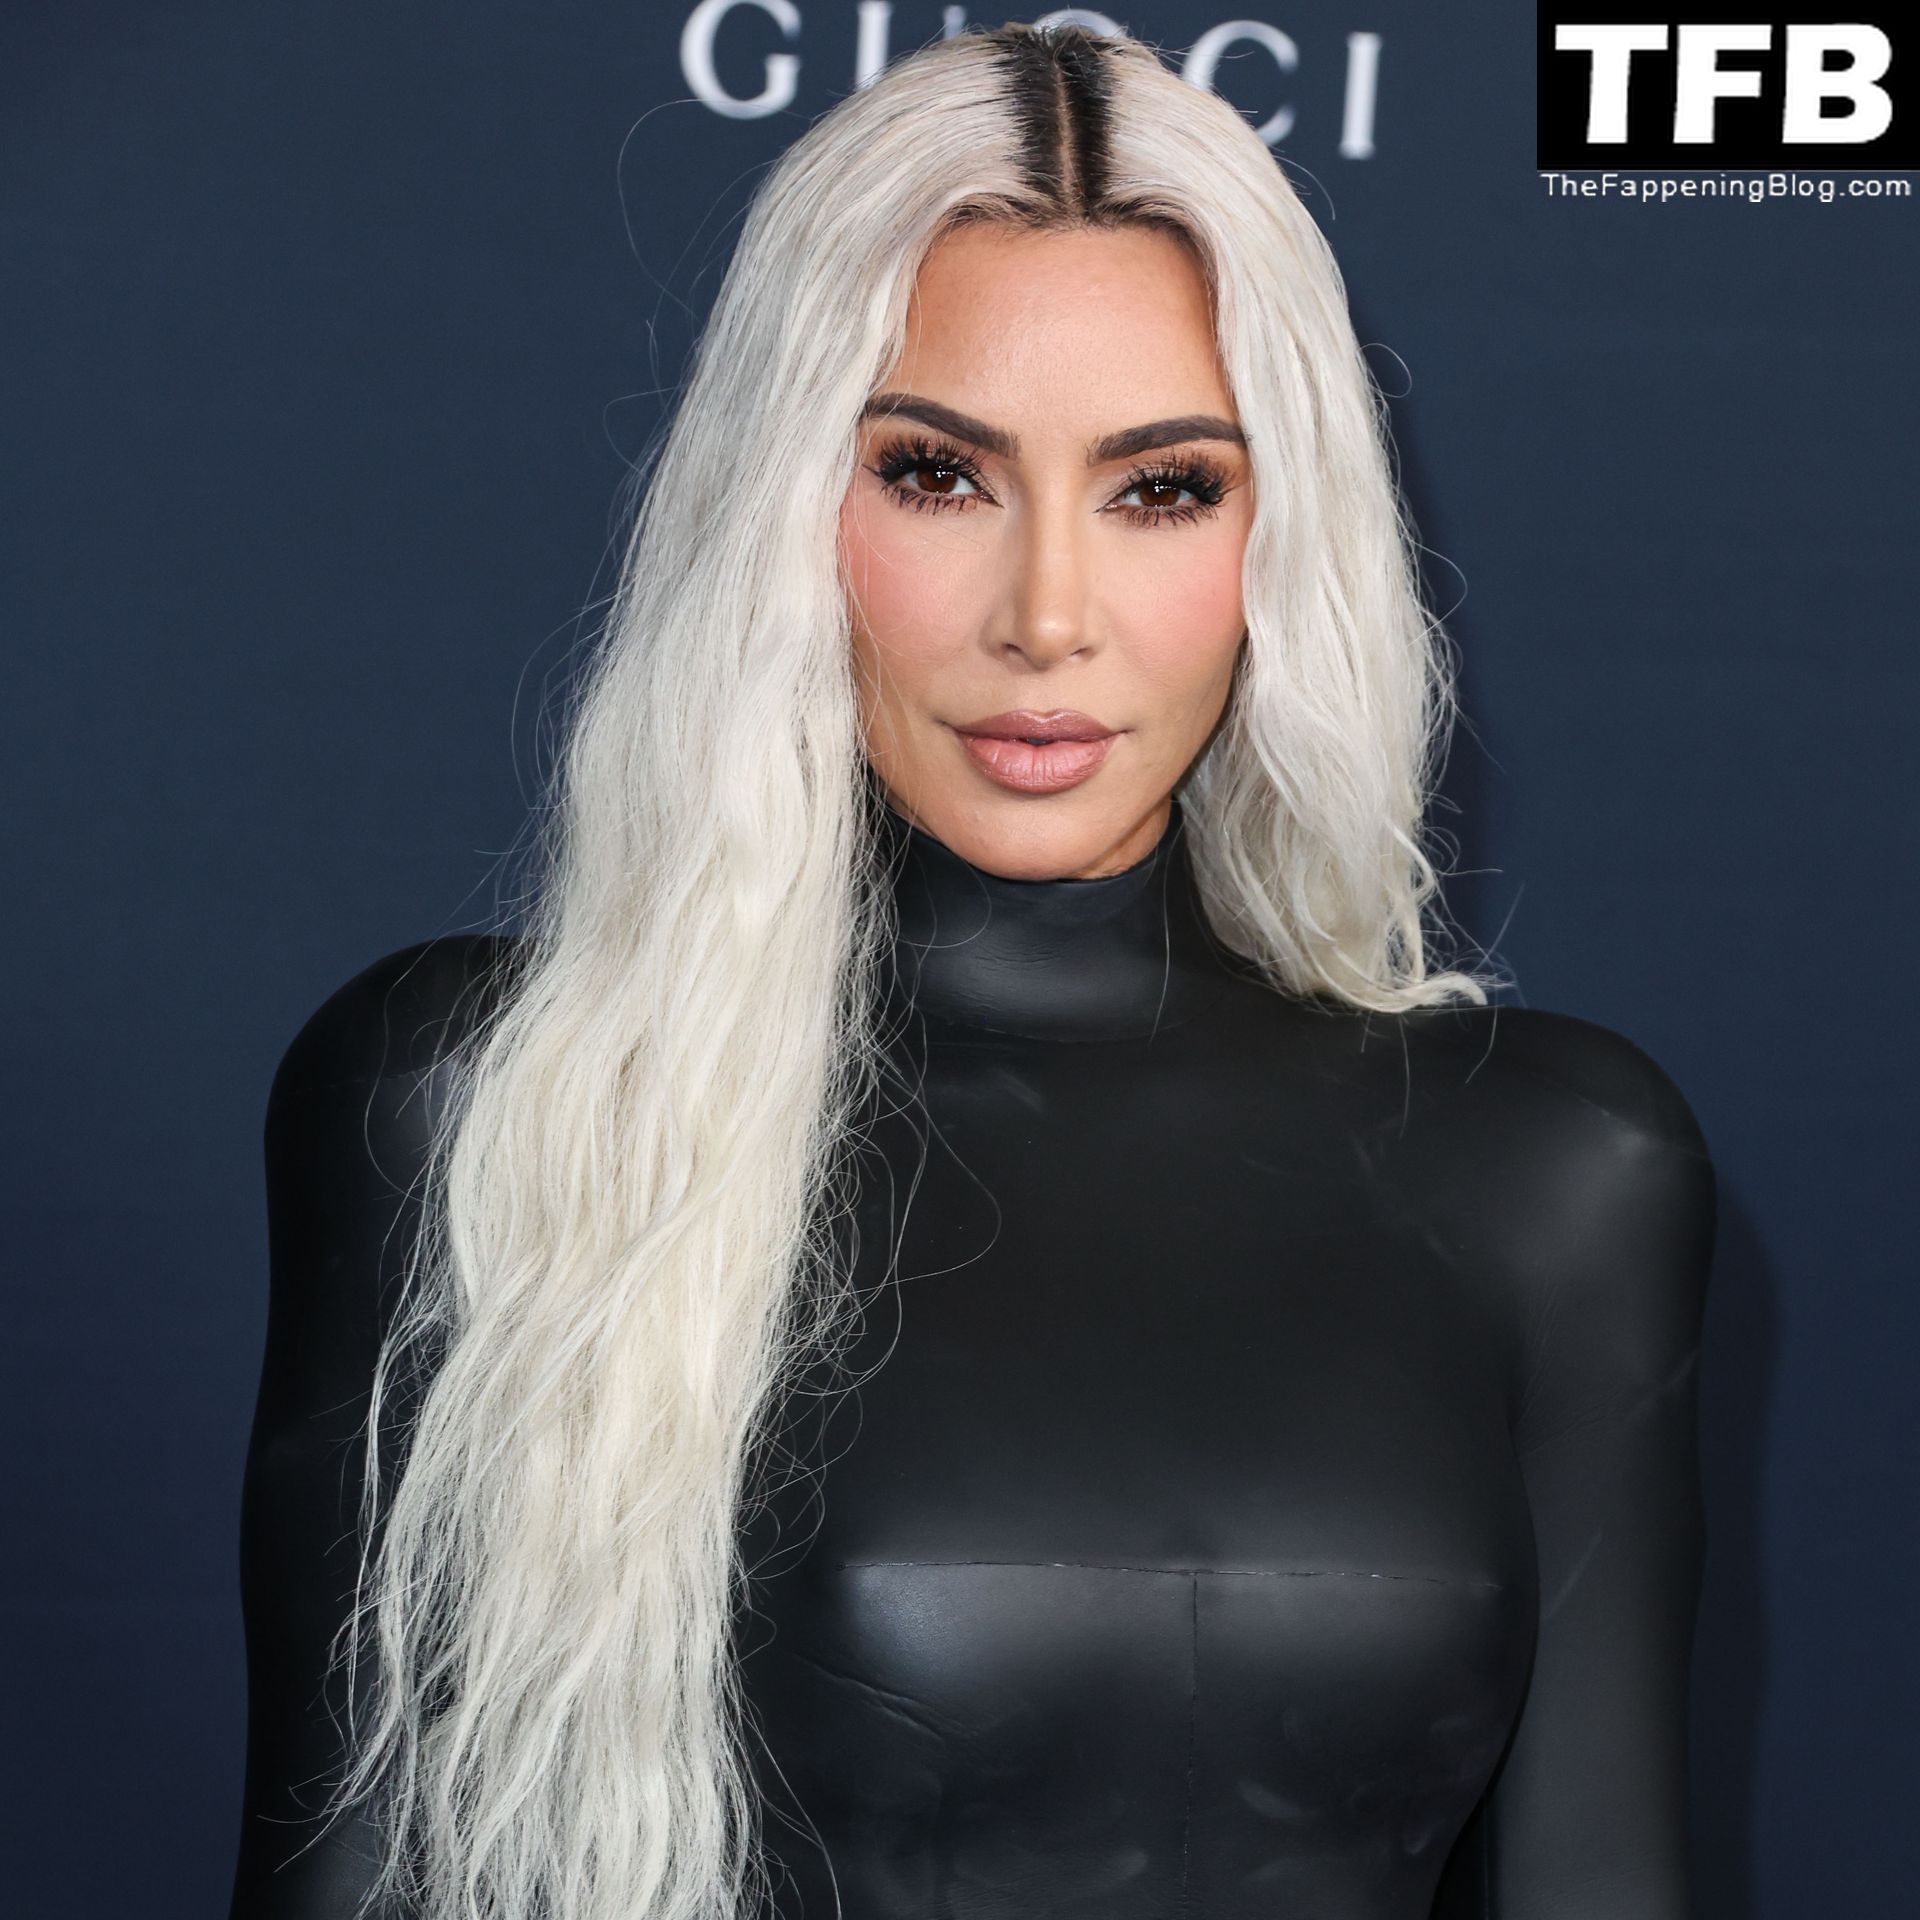 Kim-Kardashian-Sexy-The-Fappening-Blog-30.jpg